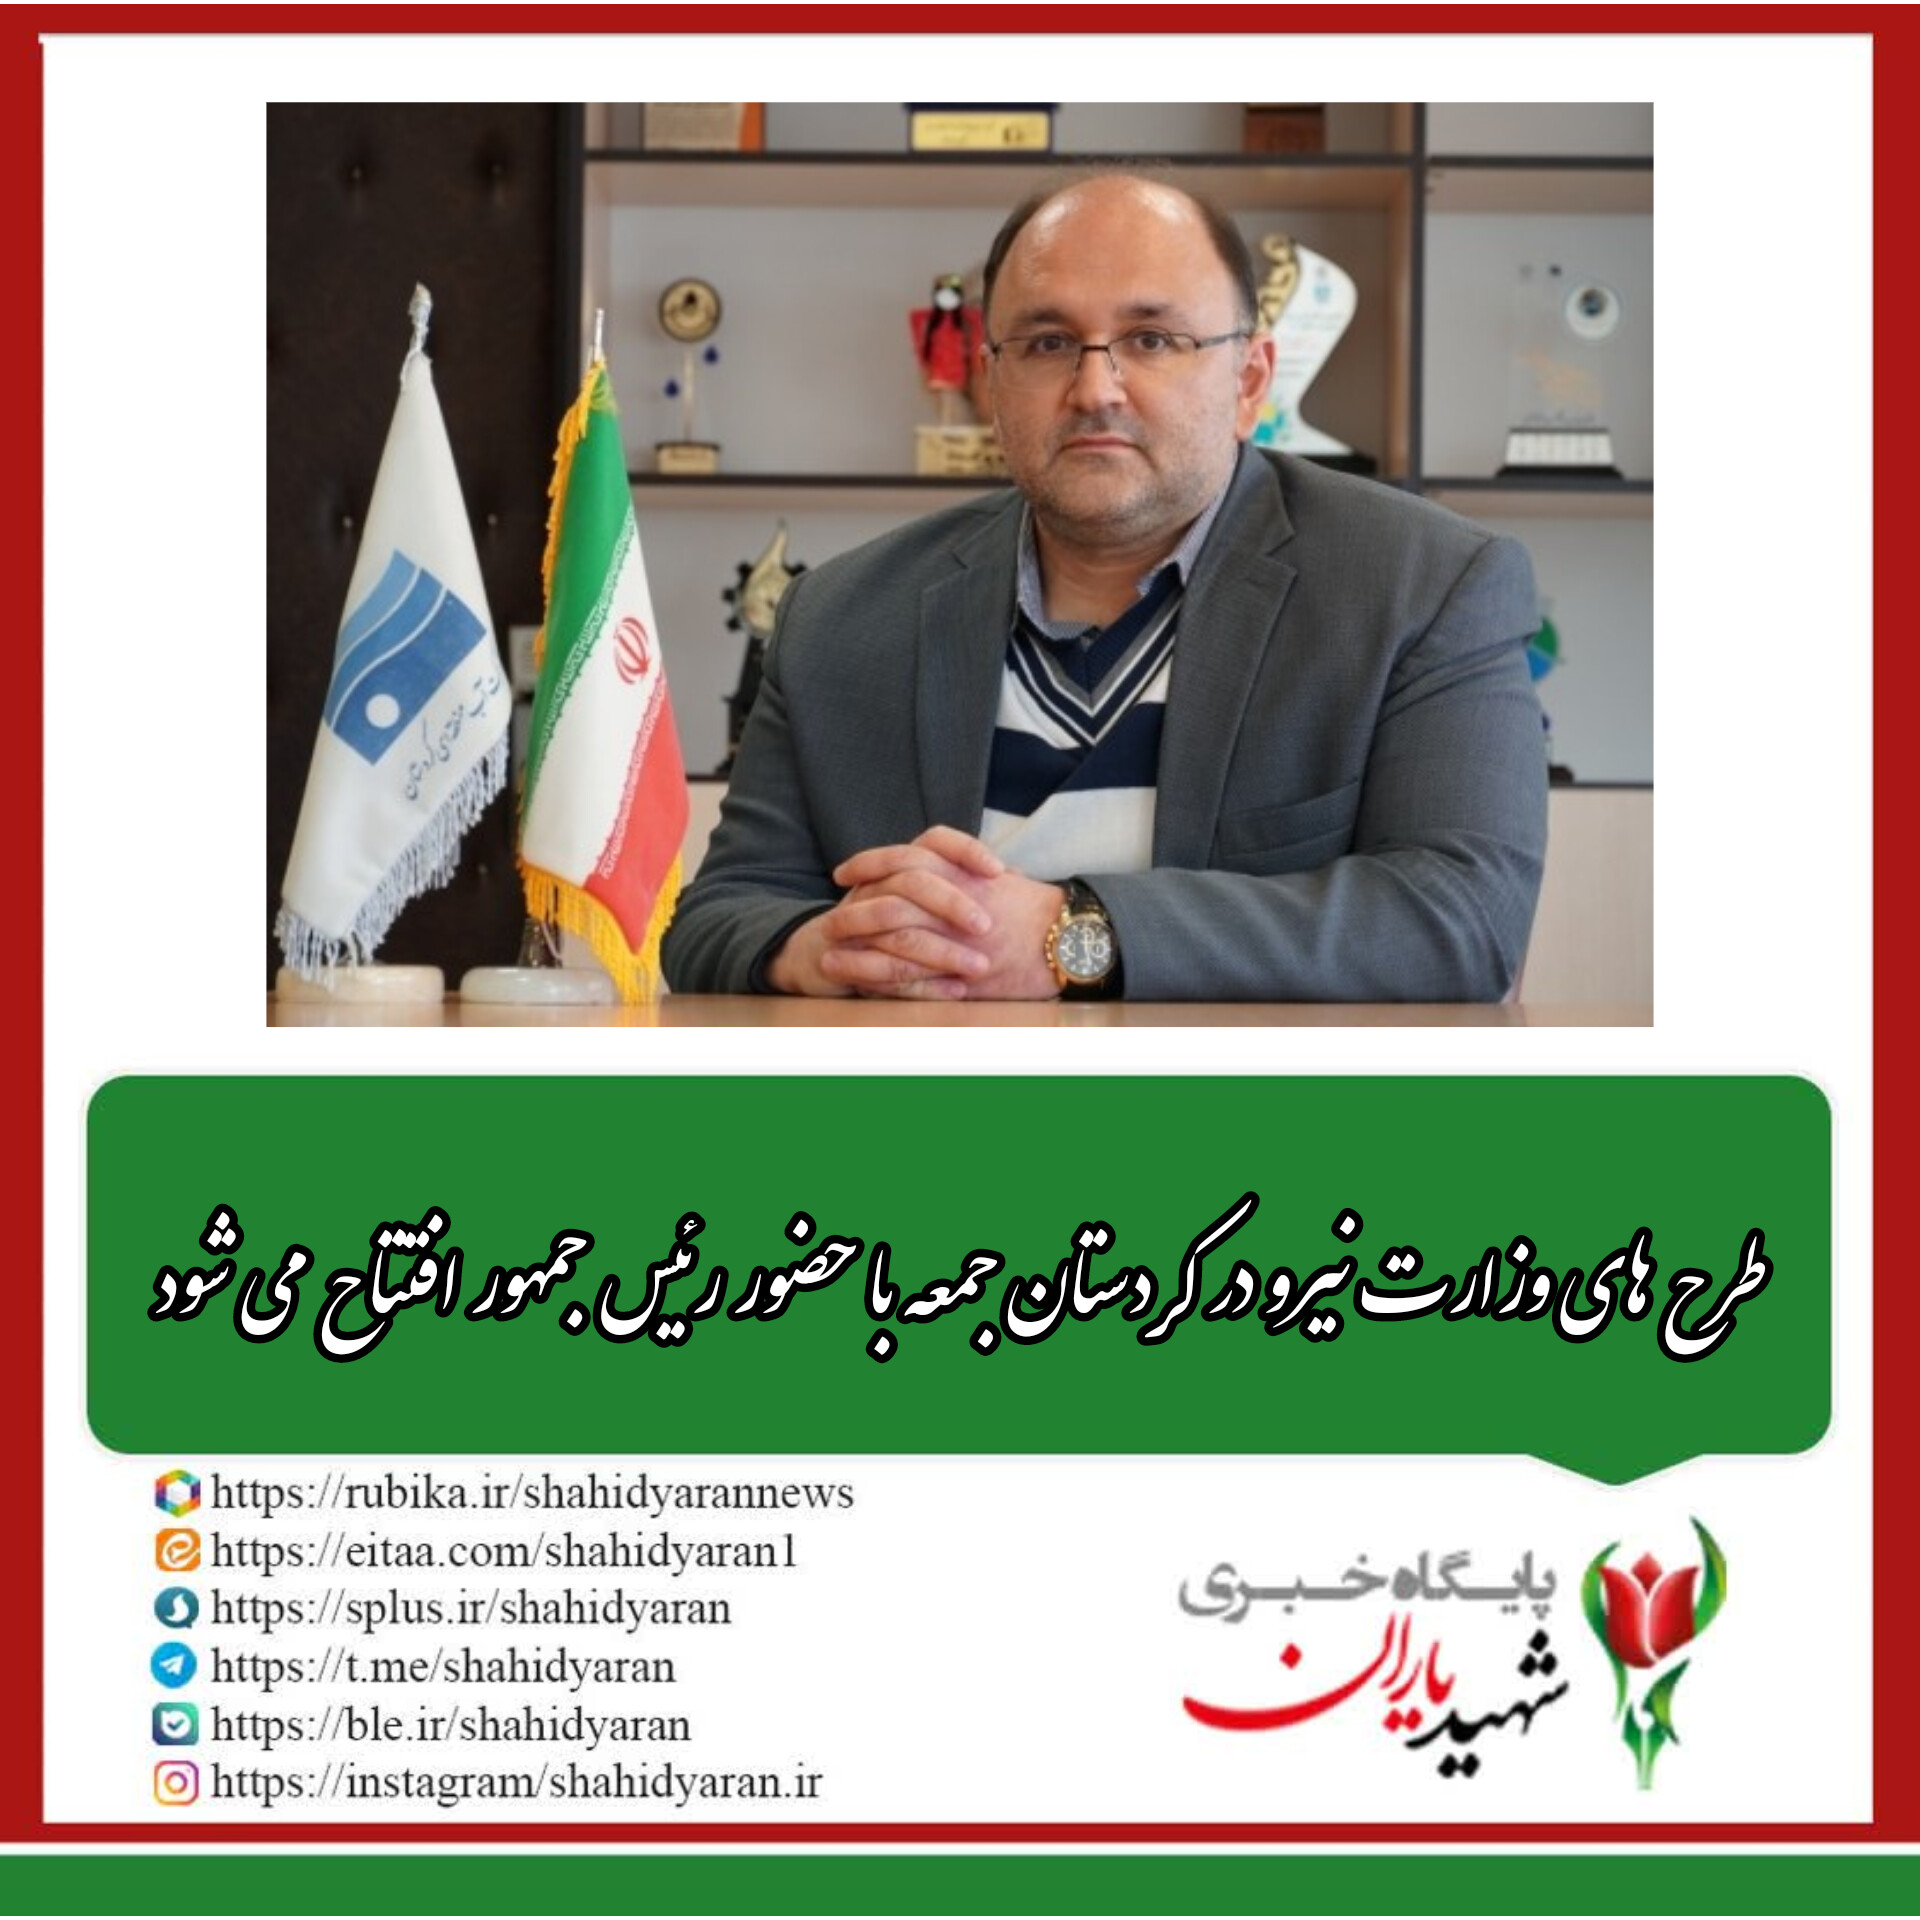 رئیس شورای هماهنگی مدیران وزارت نیرو در استان کردستان؛